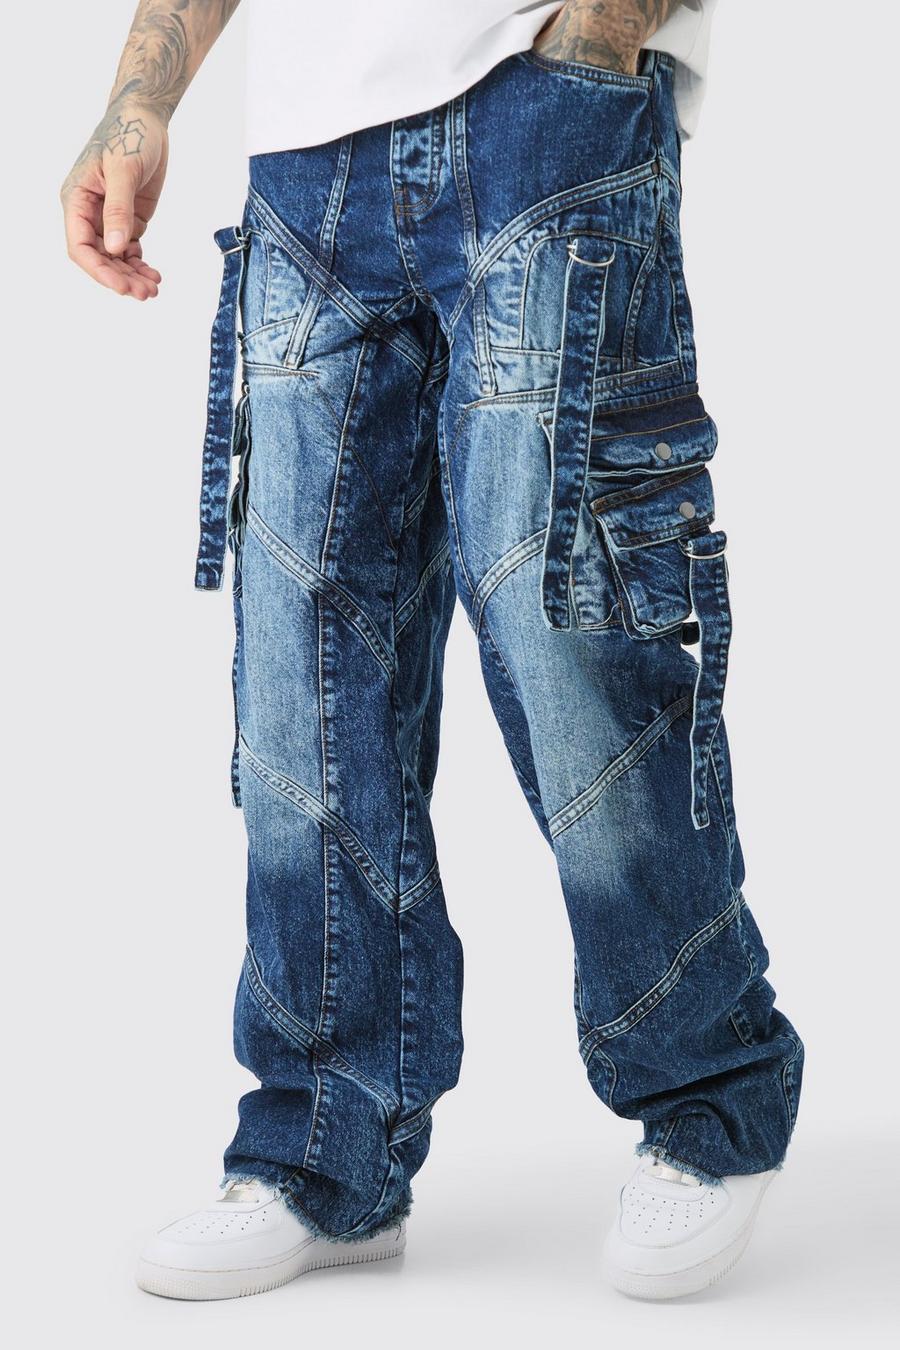 Tall lockere Jeans mit Schnallen-Detail, Indigo